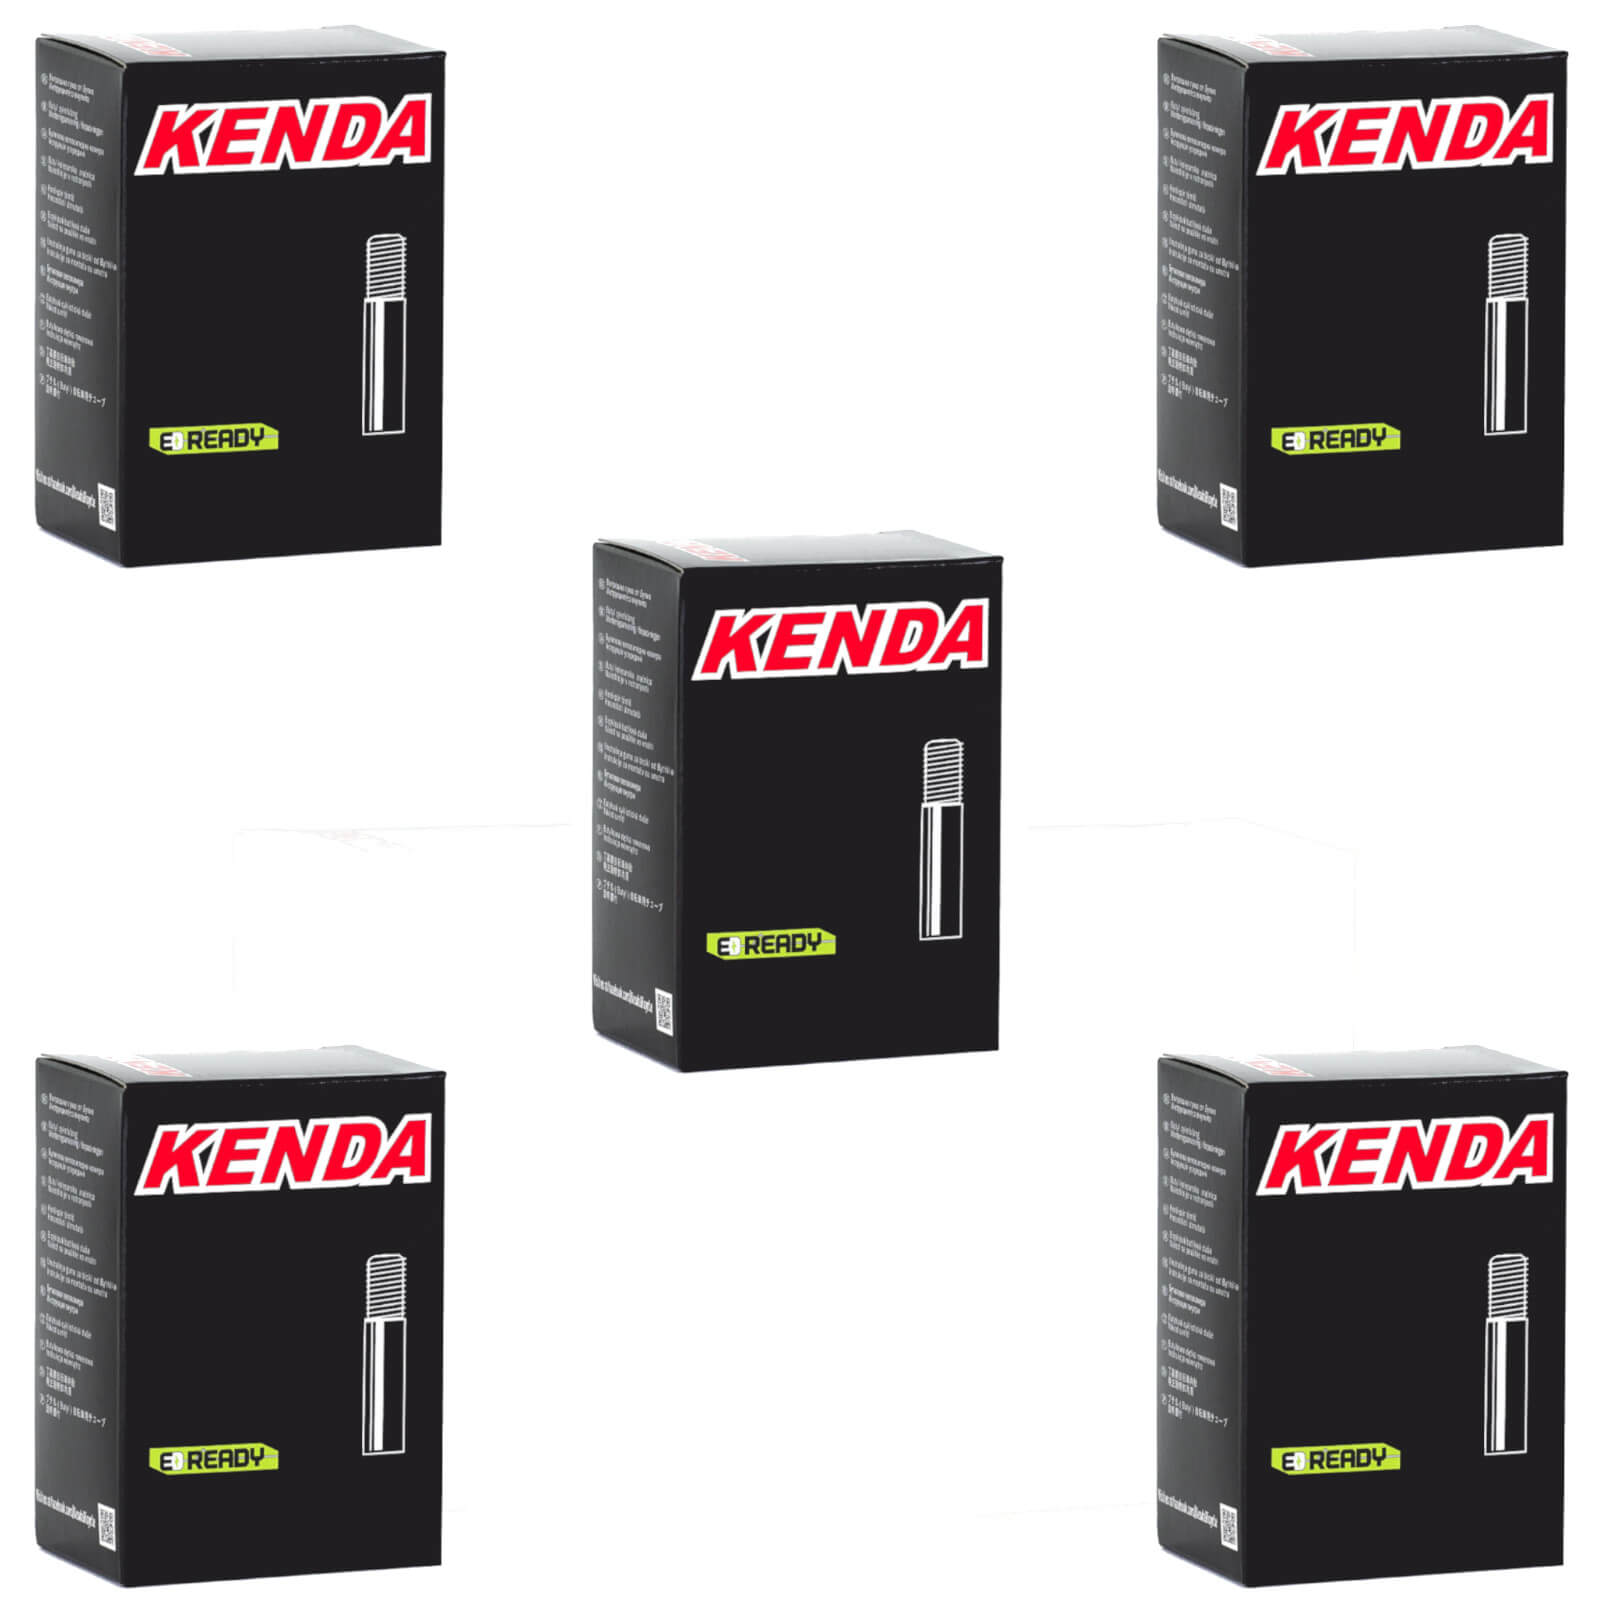 Kenda 27.5x2.0-2.4" 27.5 Inch Schrader Valve Bike Inner Tube Pack of 5